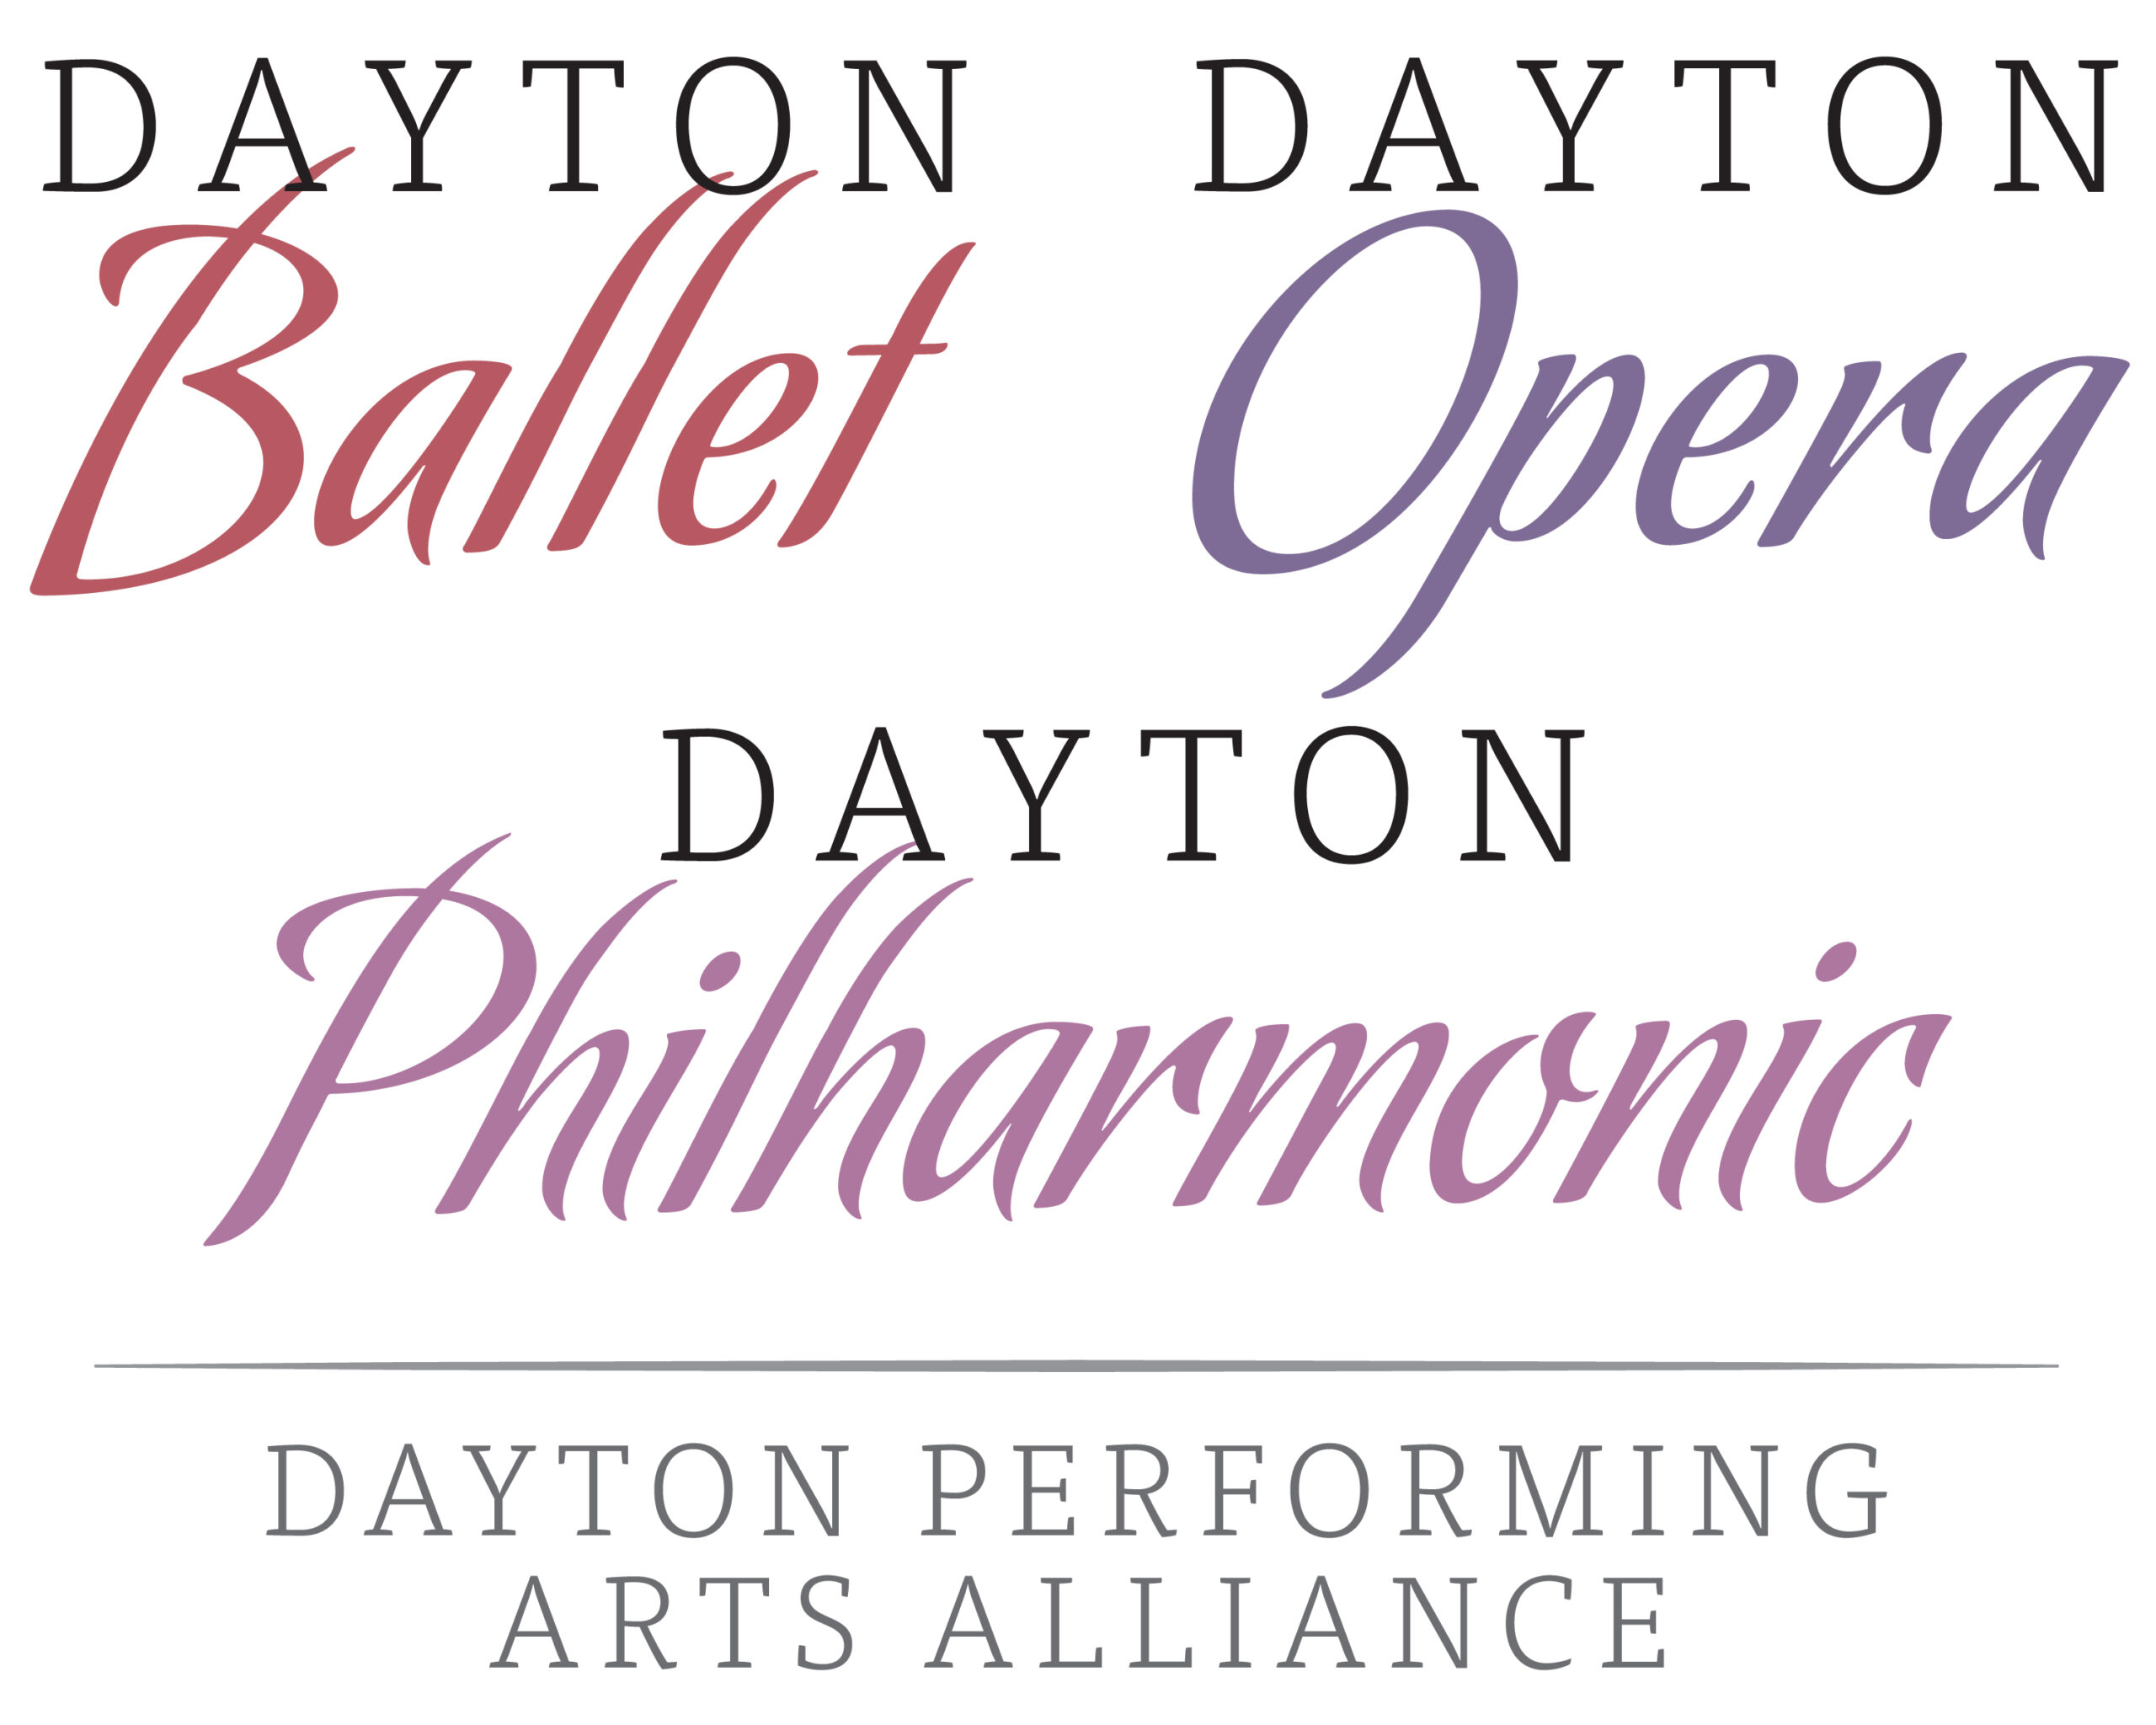 Dayton Performing Arts Alliance logo